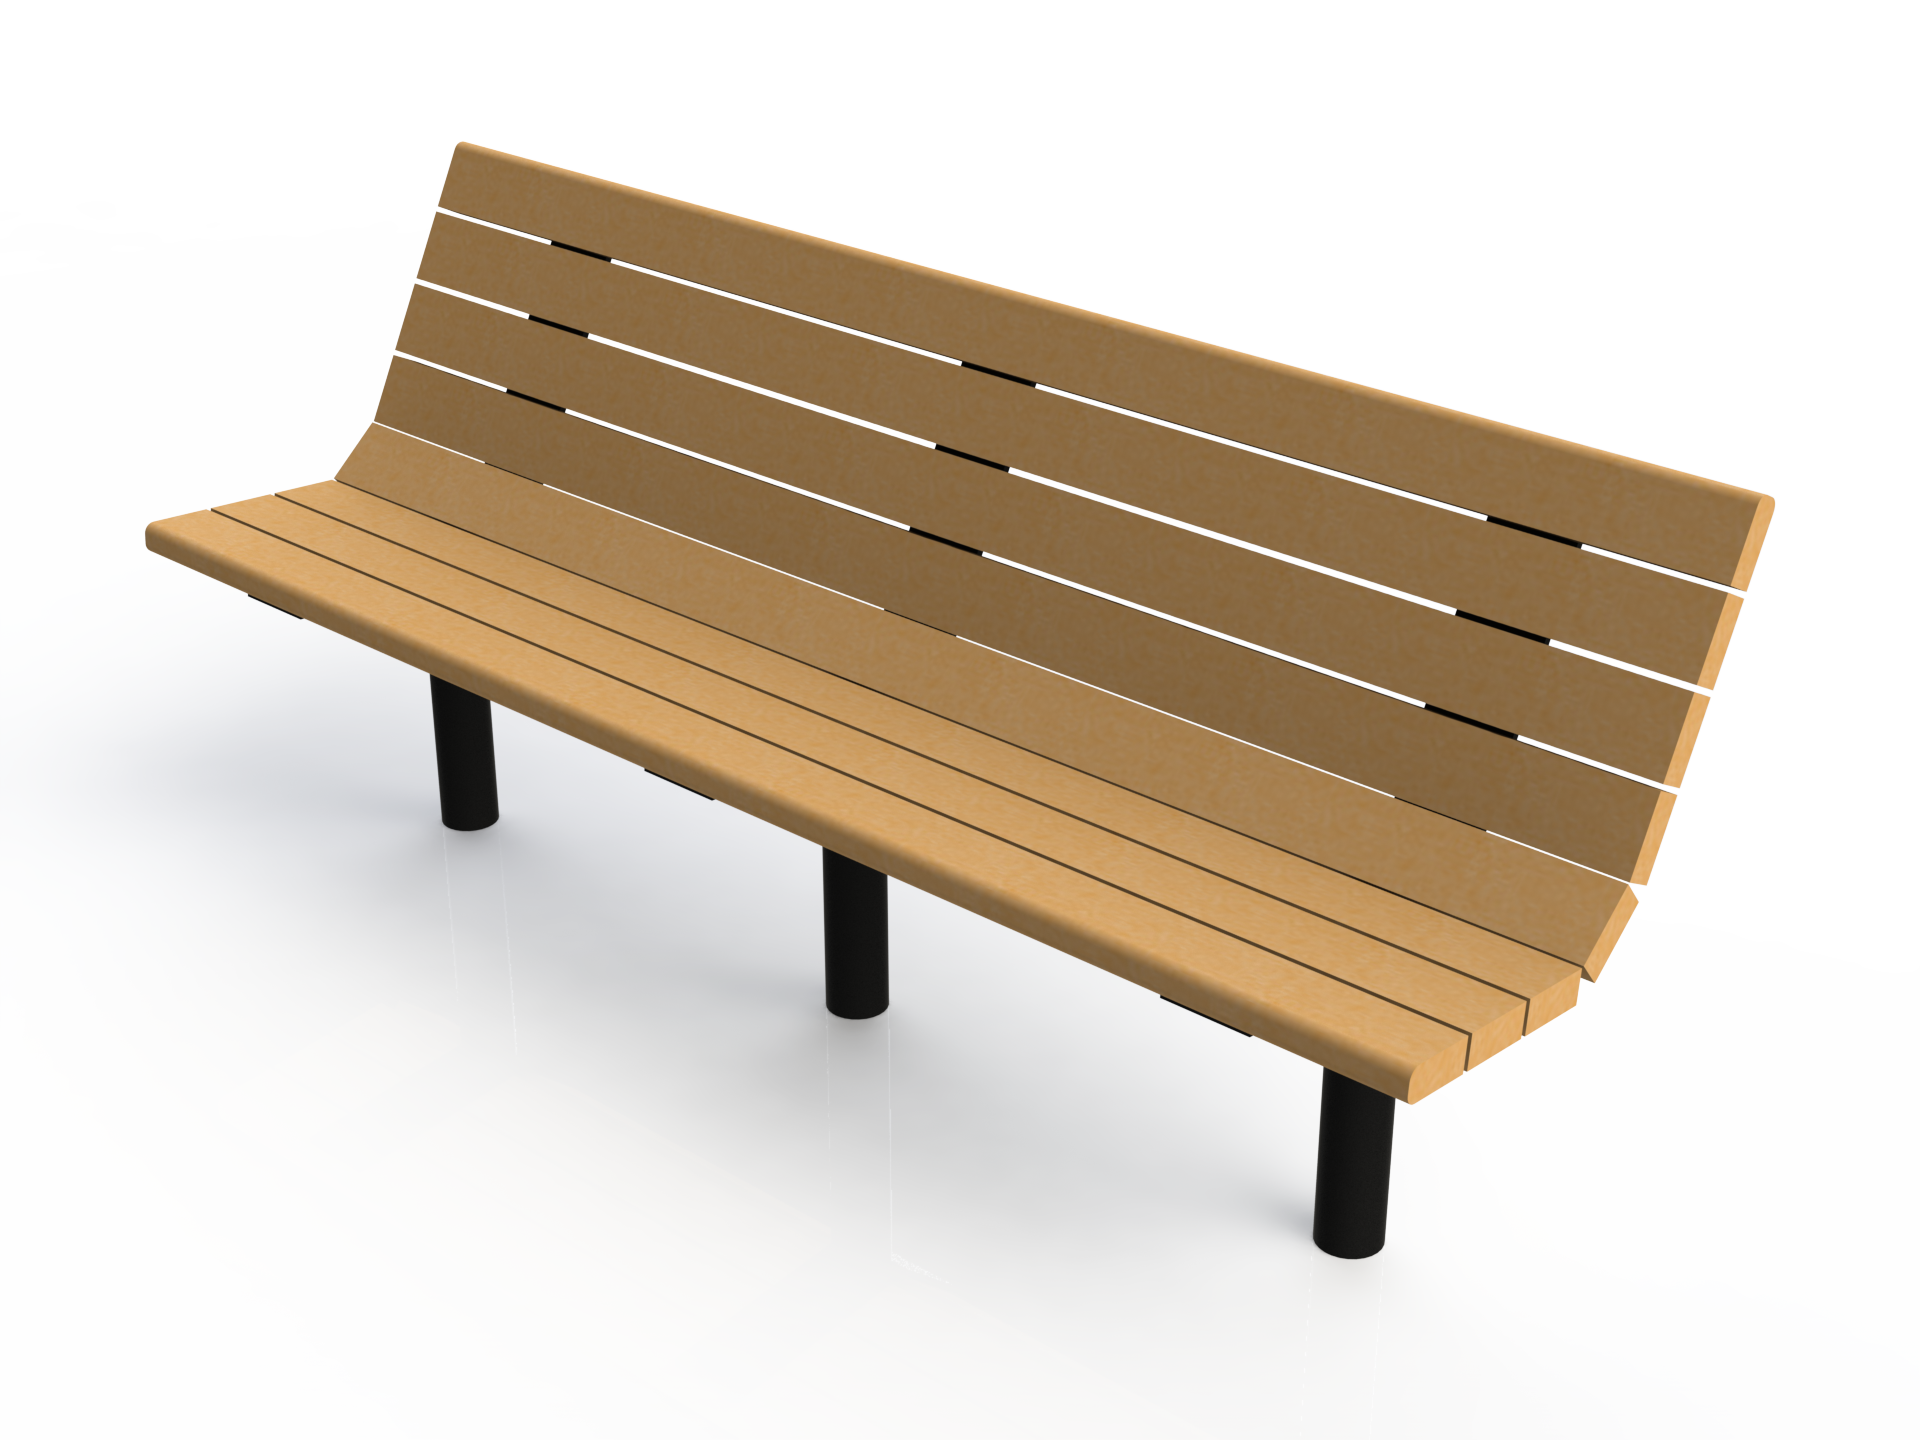 Wooden School Bench